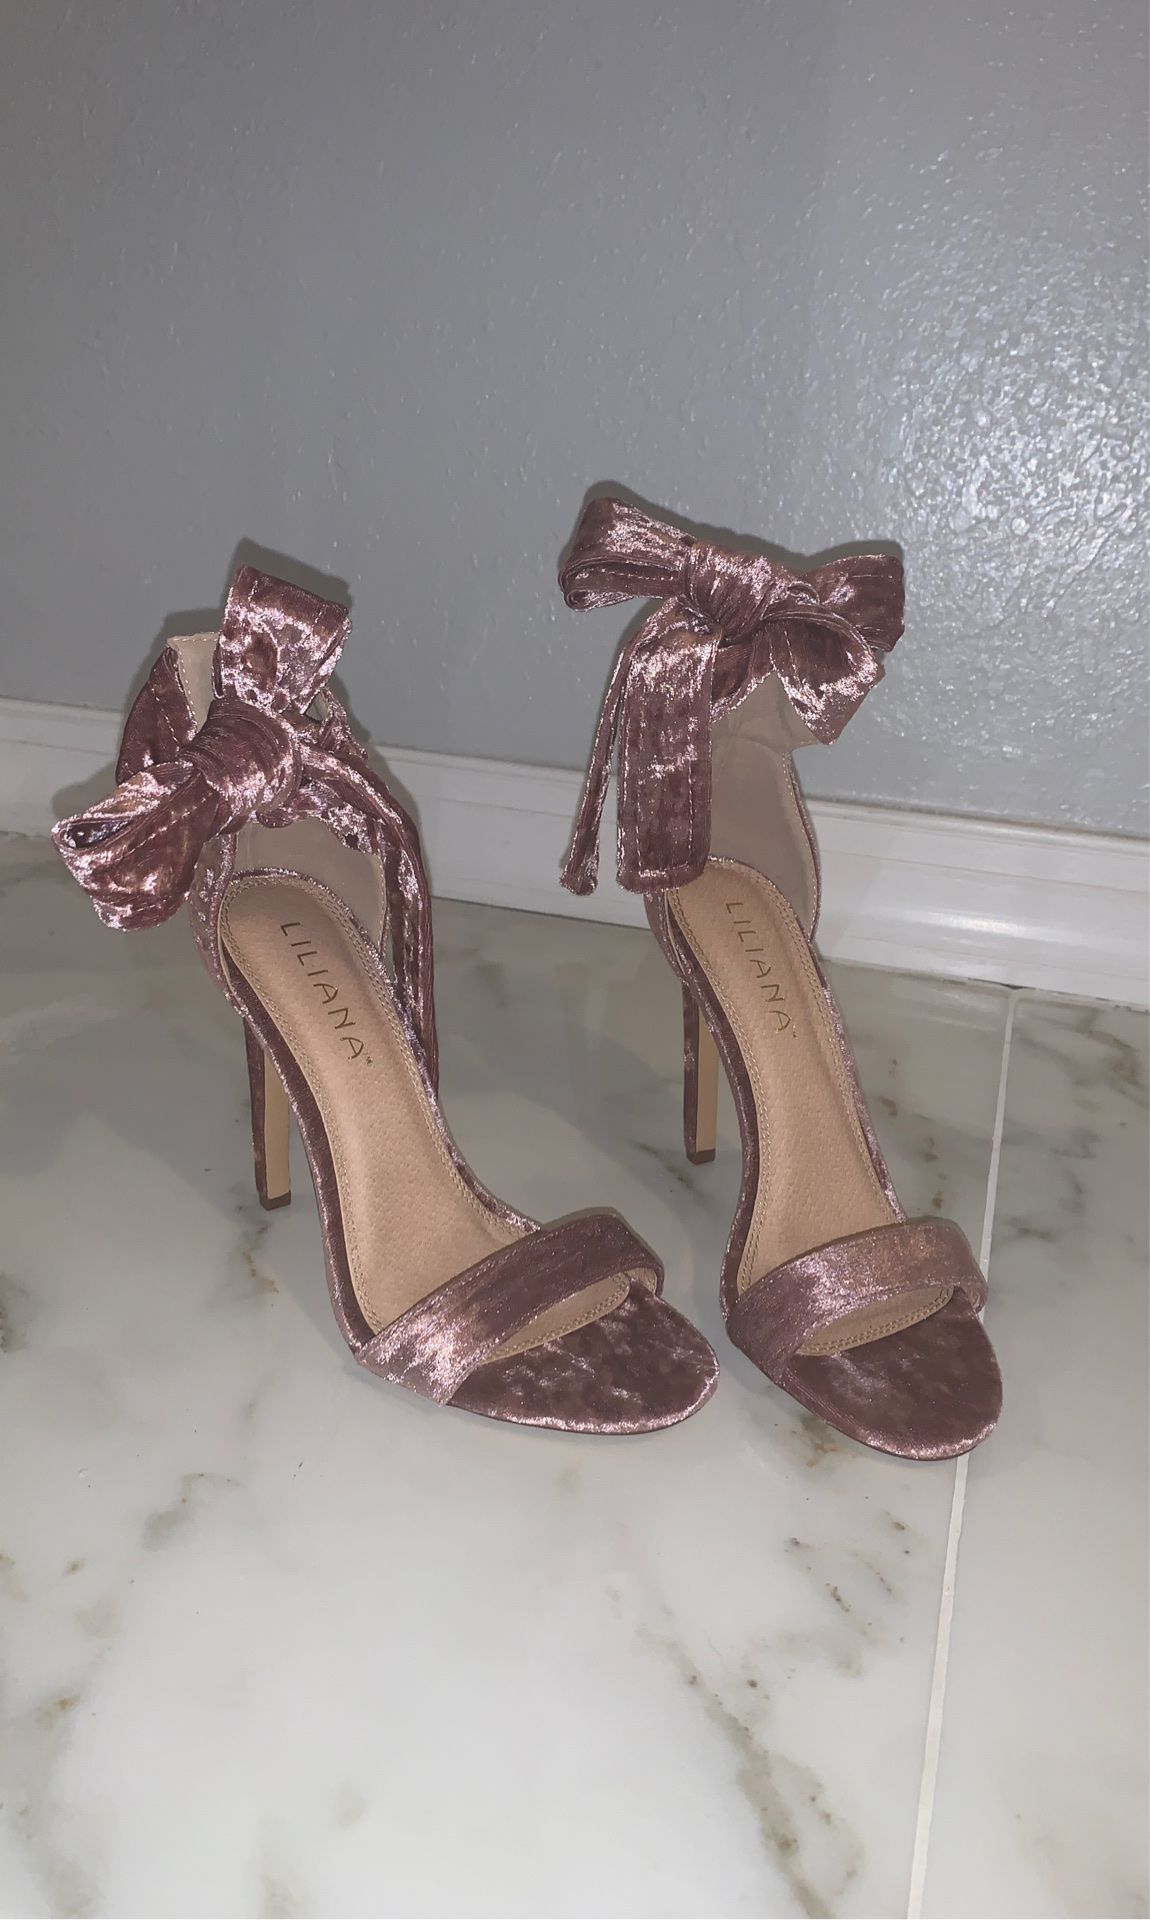 Pink velvet tie up high heels size 7